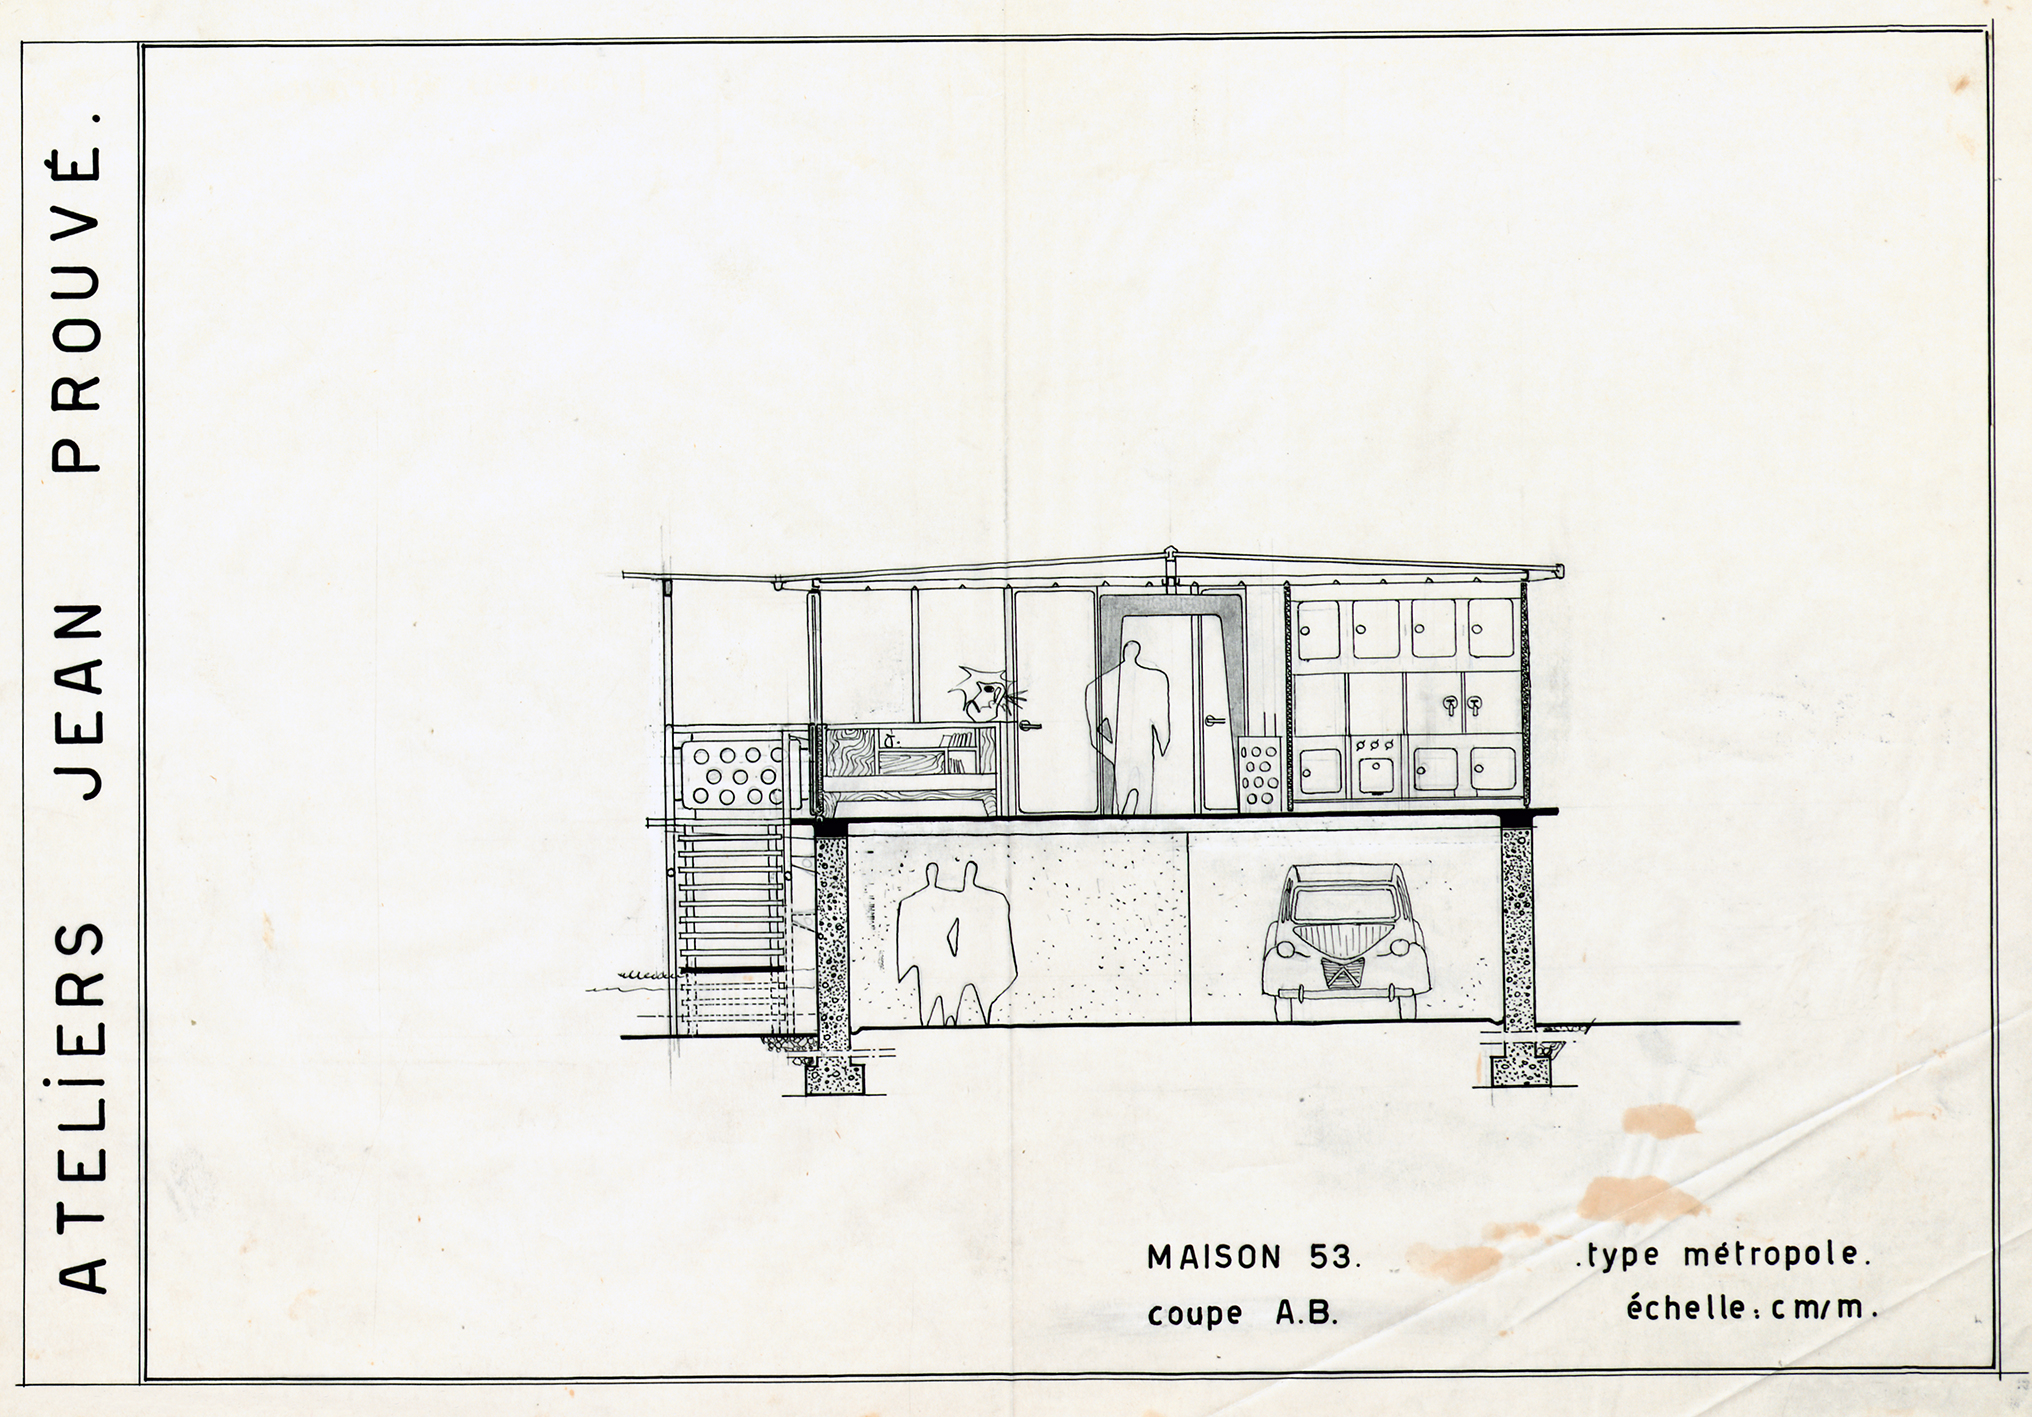 Ateliers Jean Prouvé, “House 53, Métropole type, section A.B.”. Plan no. 180.250, 1953.